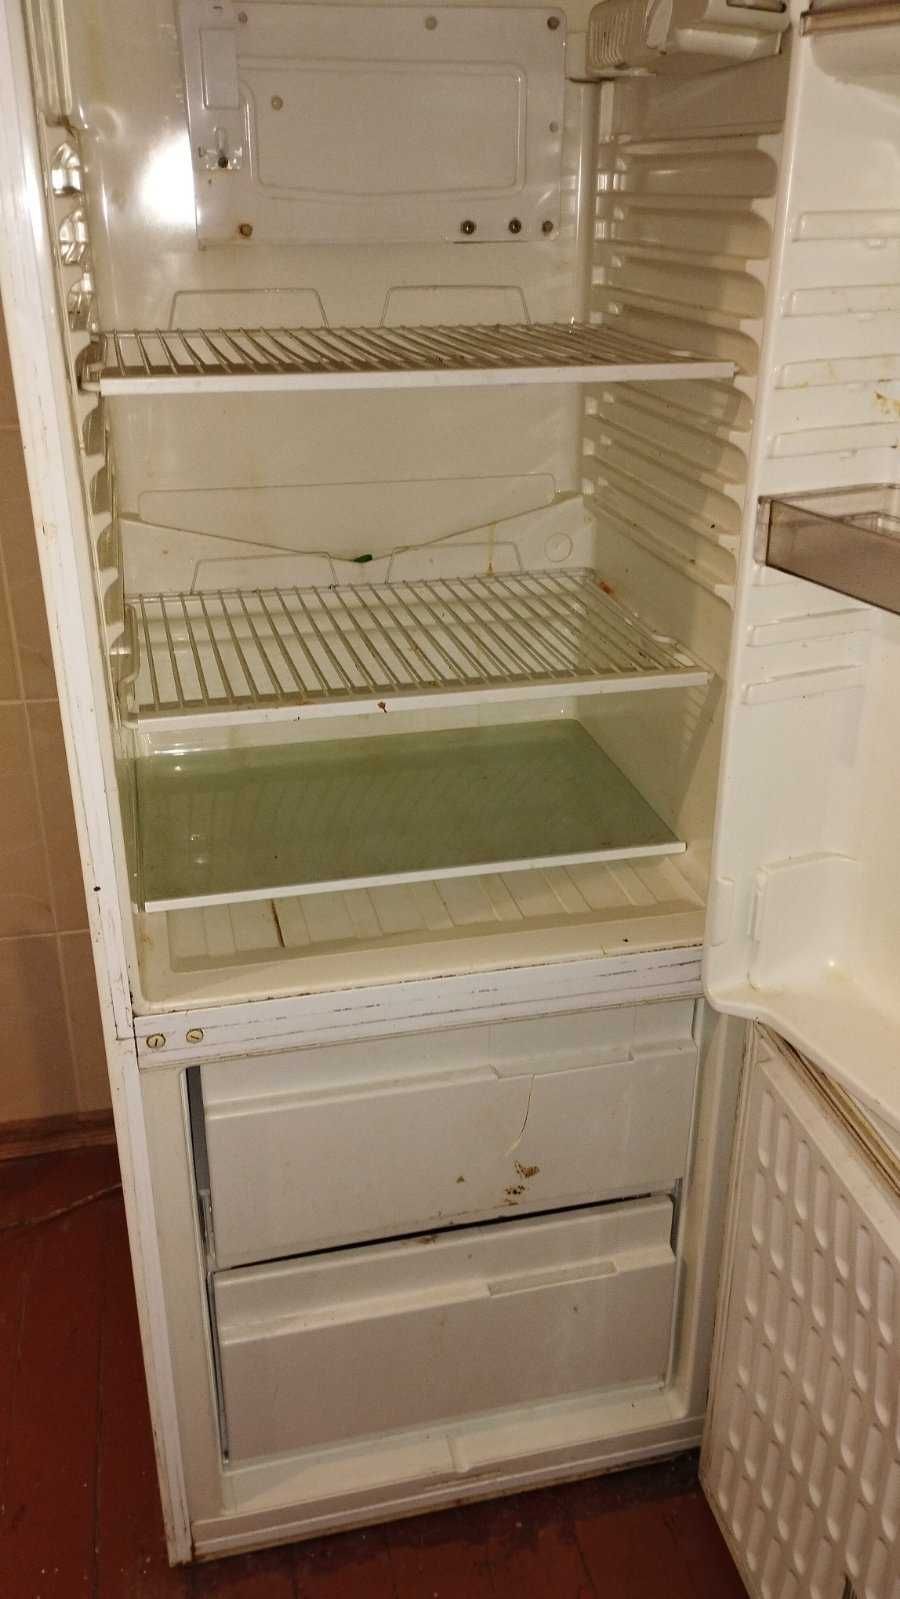 Продається холодильник